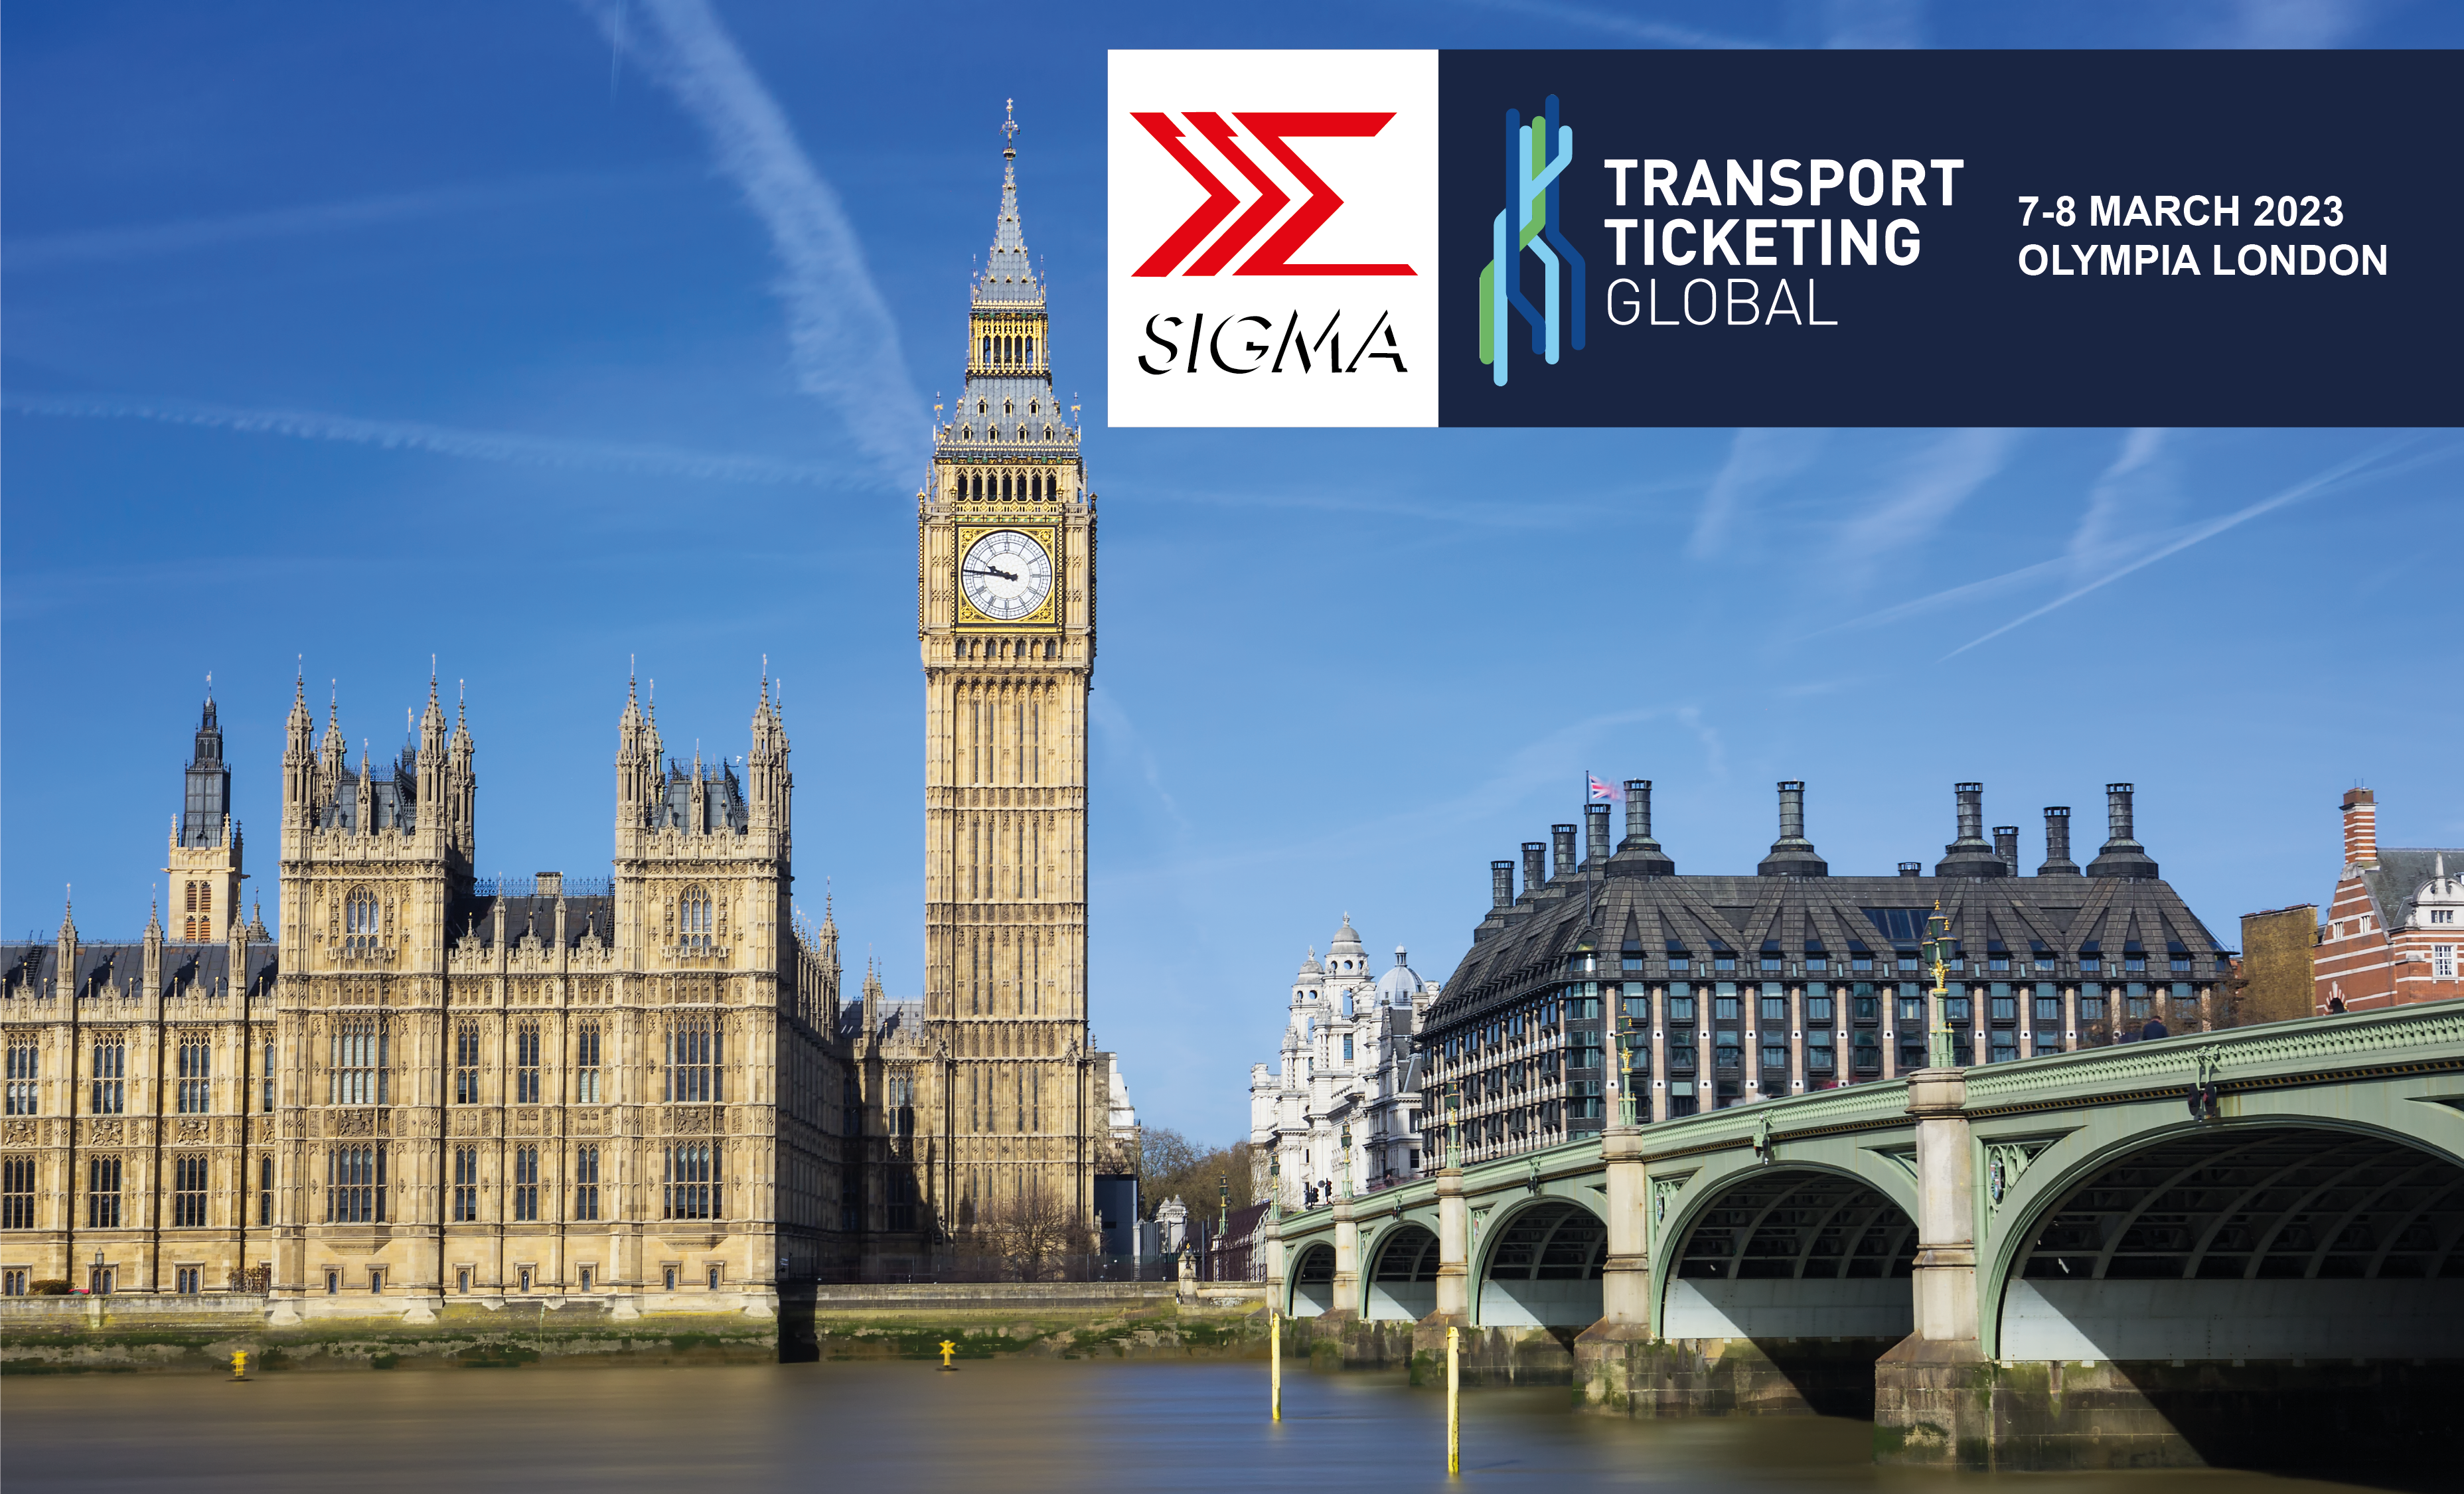 SIGMA Spa sarà nuovamente presente al Transport Ticketing Global di Londra, l’evento più importante nel settore del Transport Ticketing